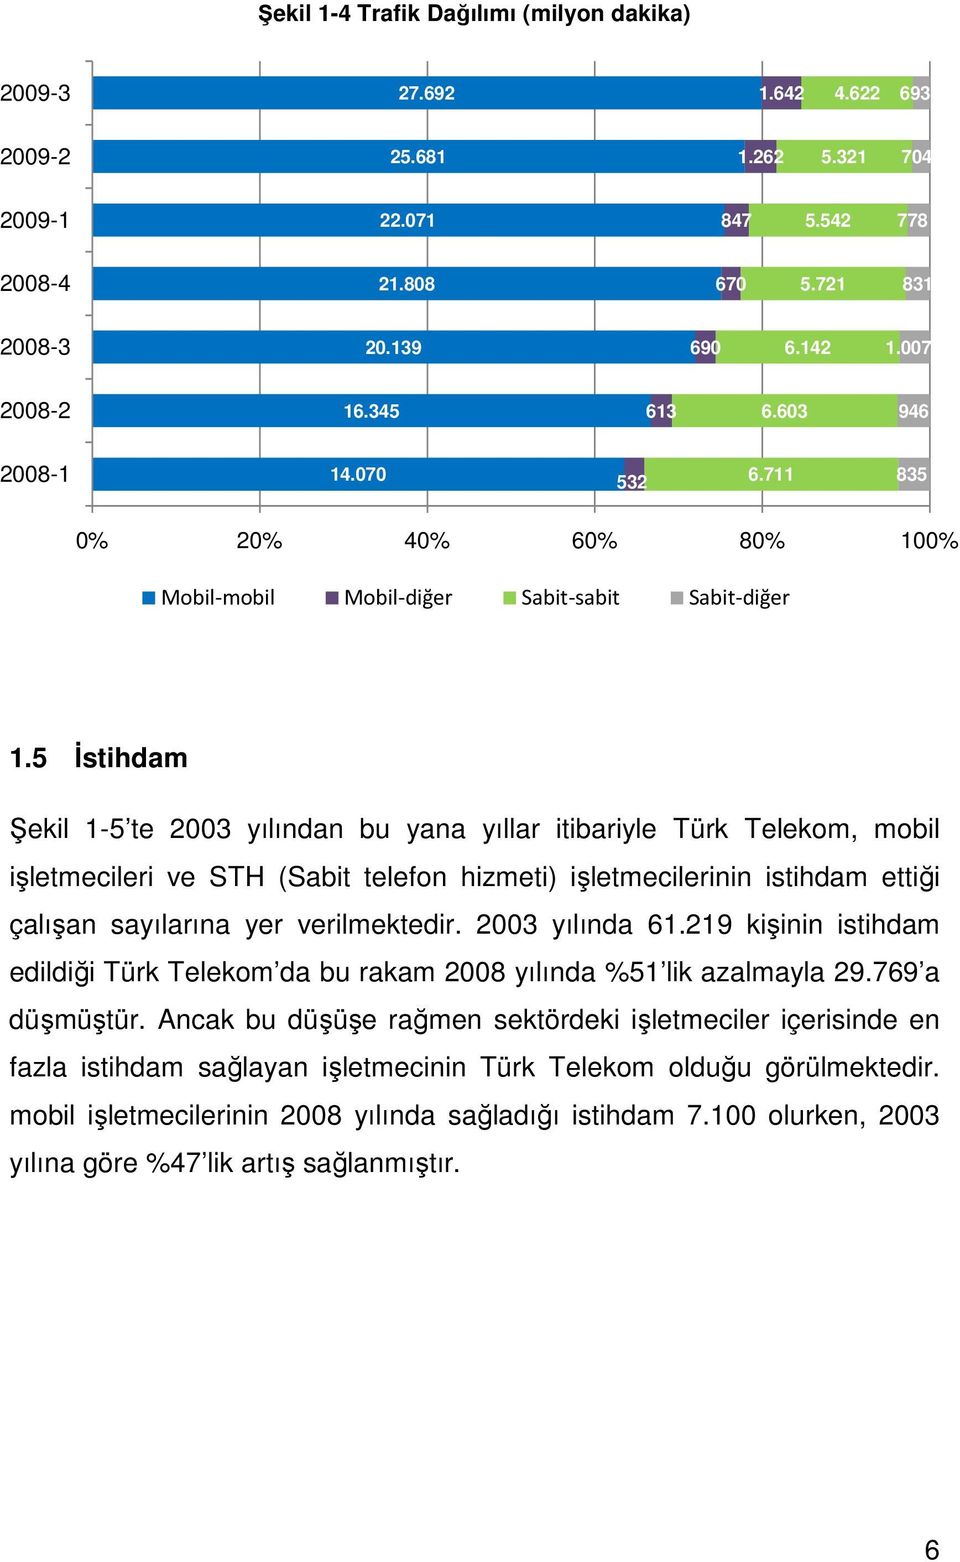 5 İstihdam Şekil 1-5 te 2003 yılından bu yana yıllar itibariyle Türk Telekom, mobil işletmecileri ve STH (Sabit telefon hizmeti) işletmecilerinin istihdam ettiği çalışan sayılarına yer verilmektedir.